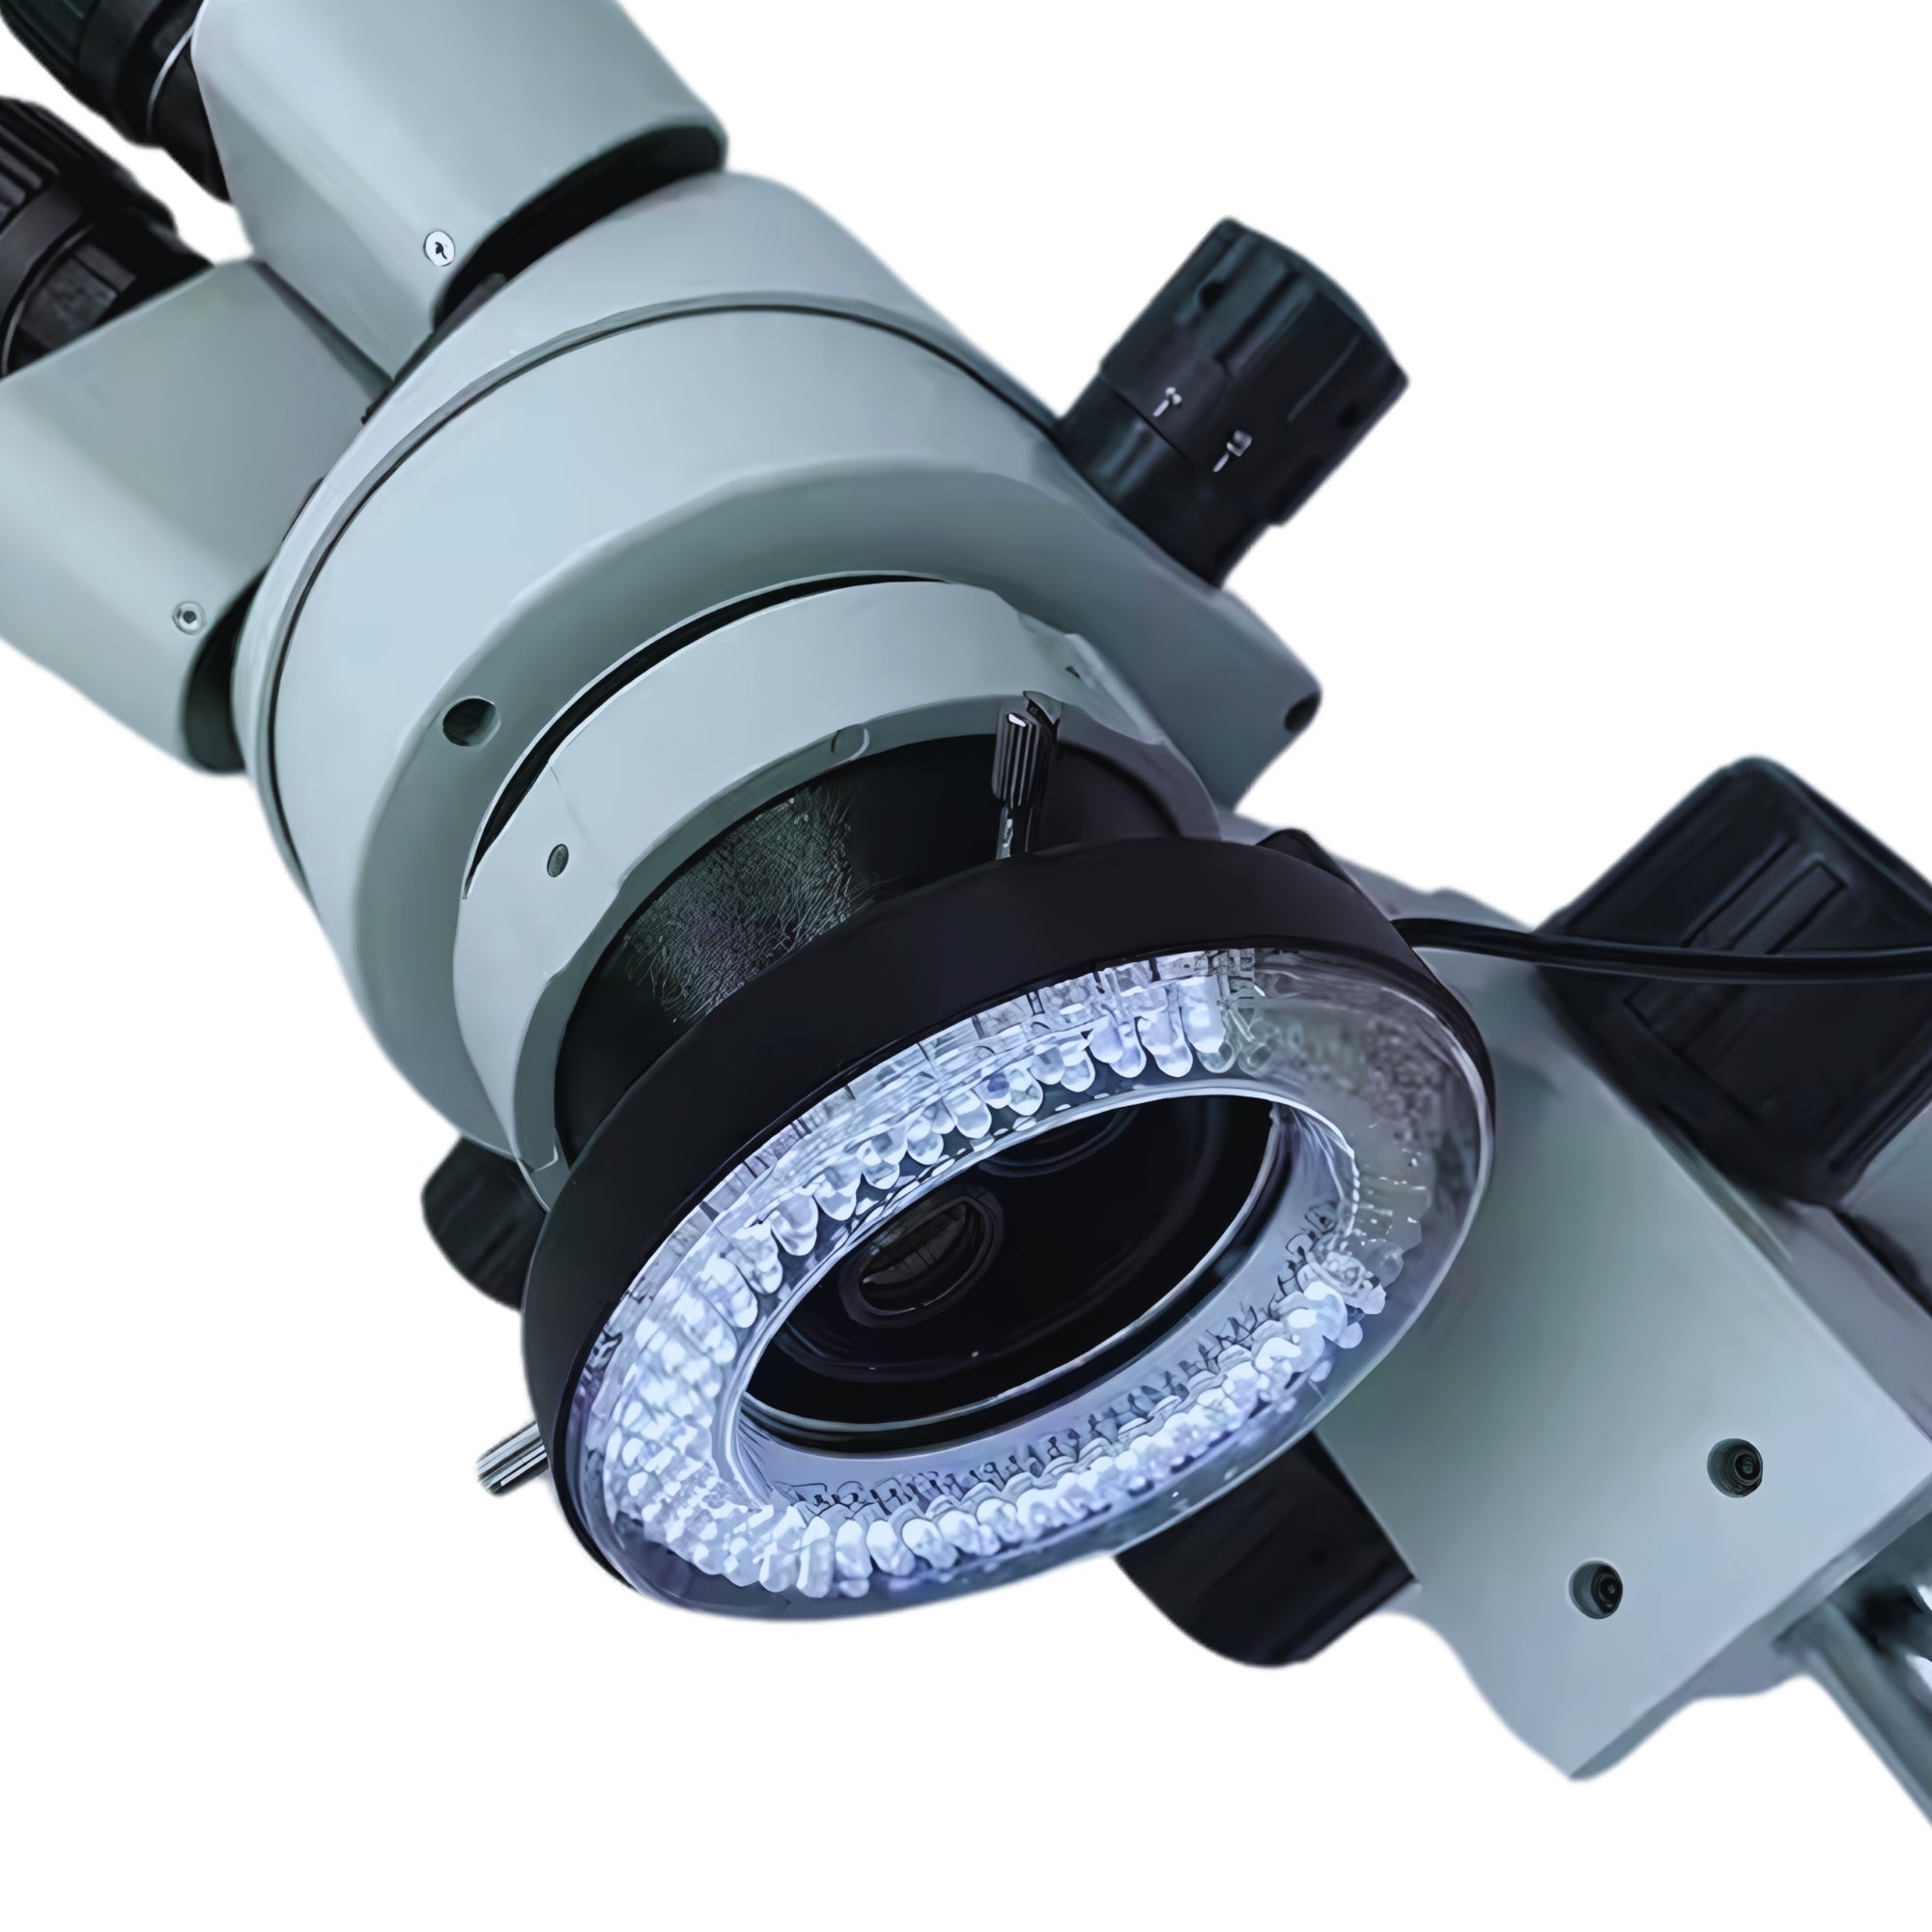 Ekstra mikroskopbelysning: dagslys og ultraviolet lys